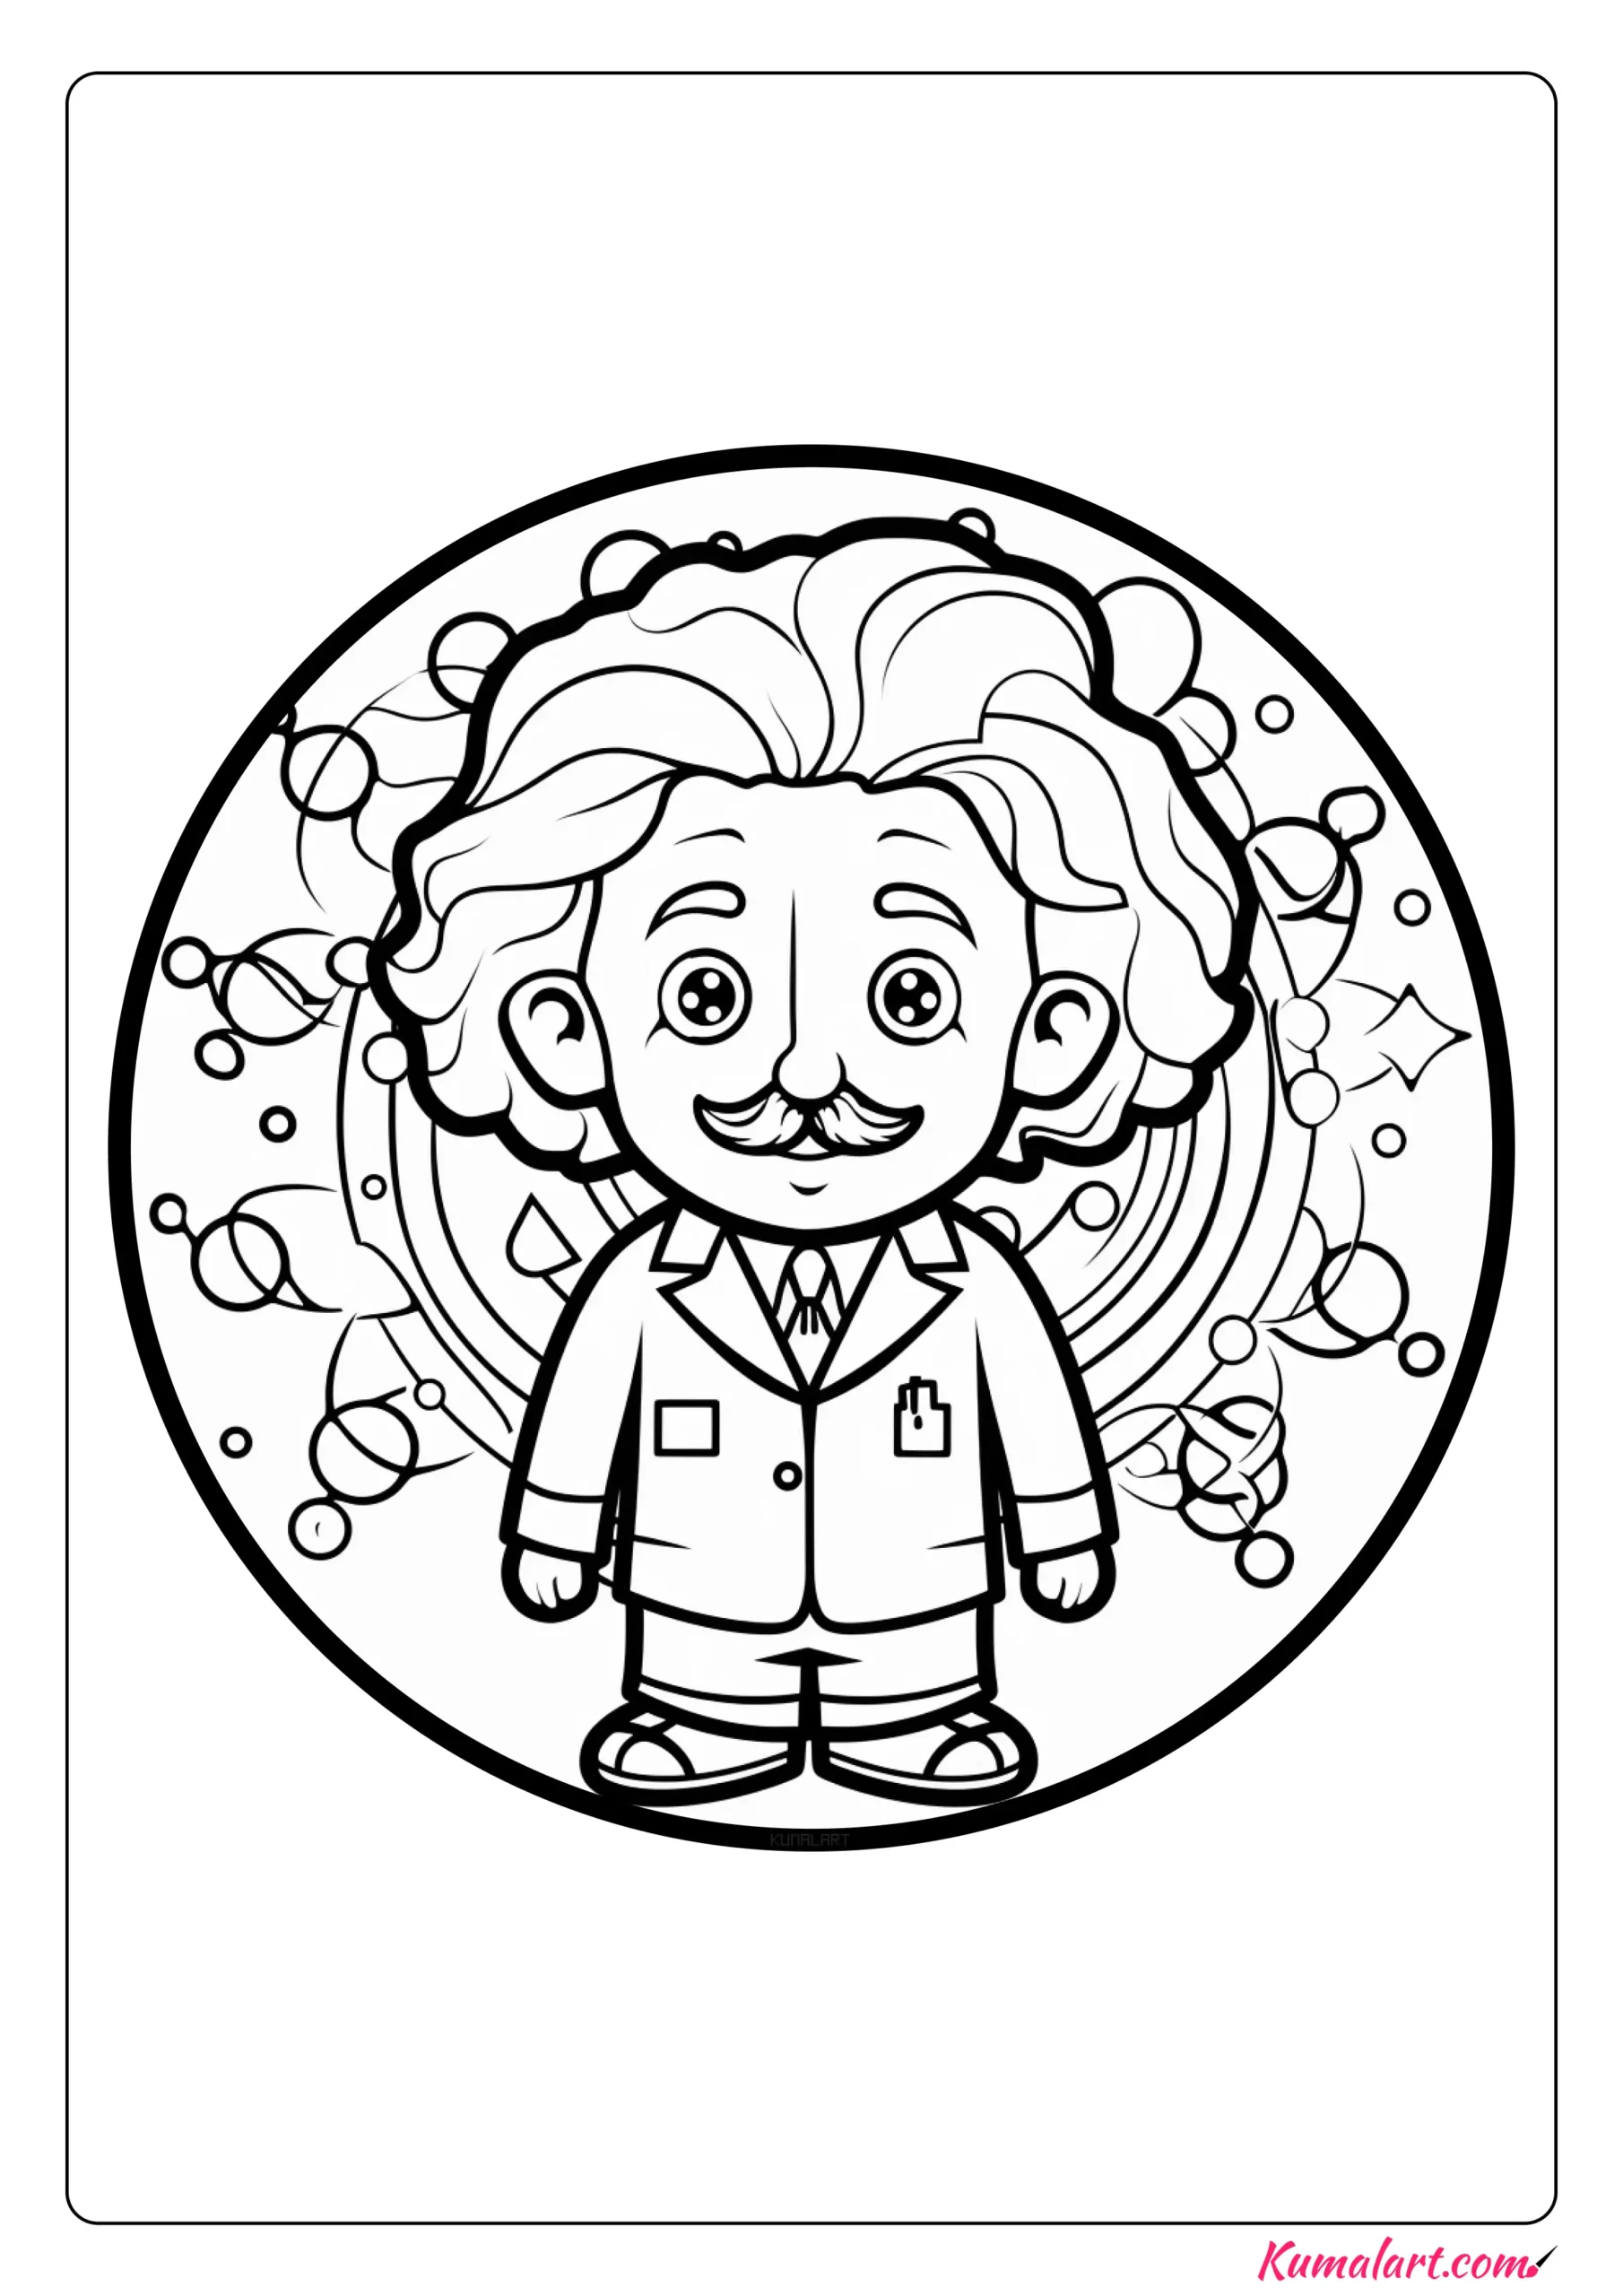 Creative Albert Einstein Coloring Page